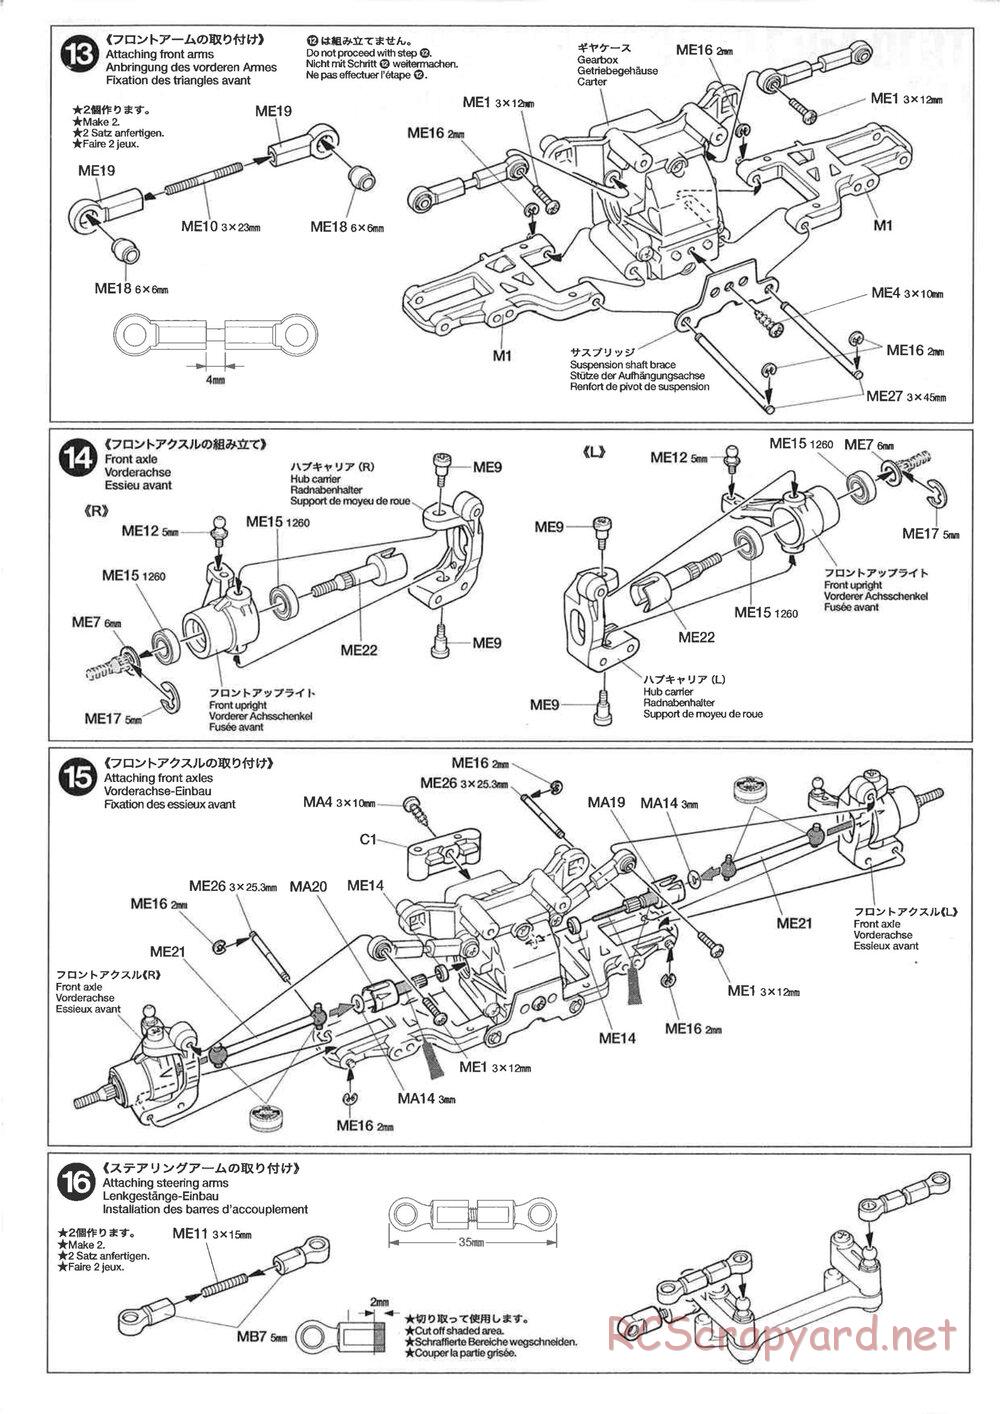 Tamiya - TG10 Mk.1 Long Suspension Chassis Chassis - Manual - Page 2